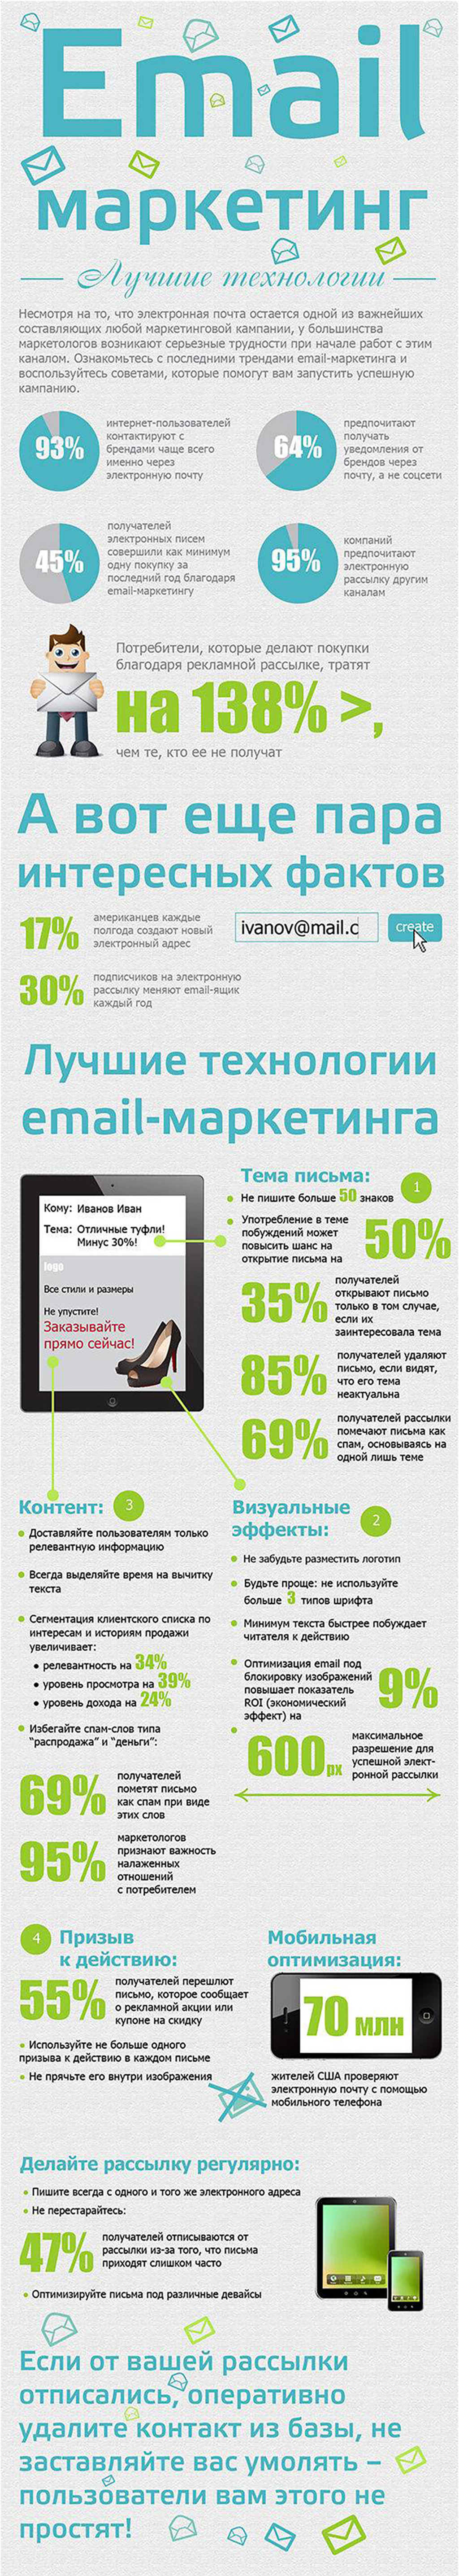 Email-маркетинг (Инфографика)